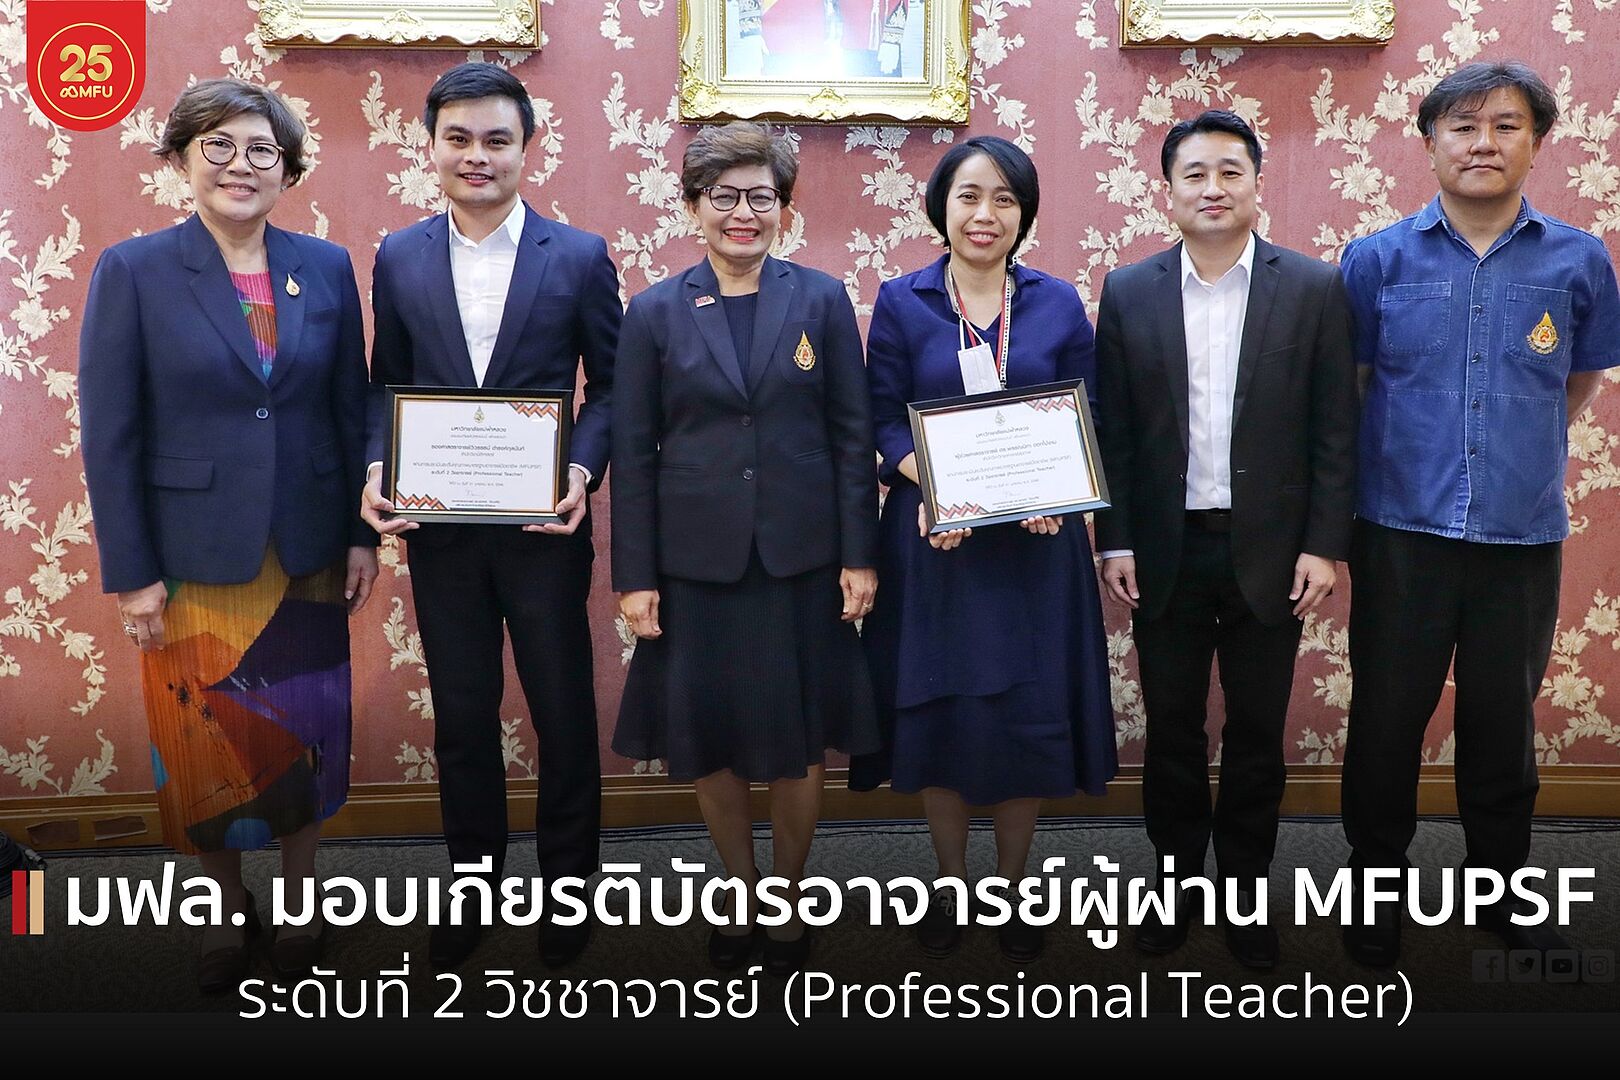 อธิการบดีมอบเกียรติบัตรอาจารย์ผู้ผ่าน MFUPSF ระดับที่ 2 วิชชาจารย์ (Professional Teacher) จำนวน 2 ท่าน